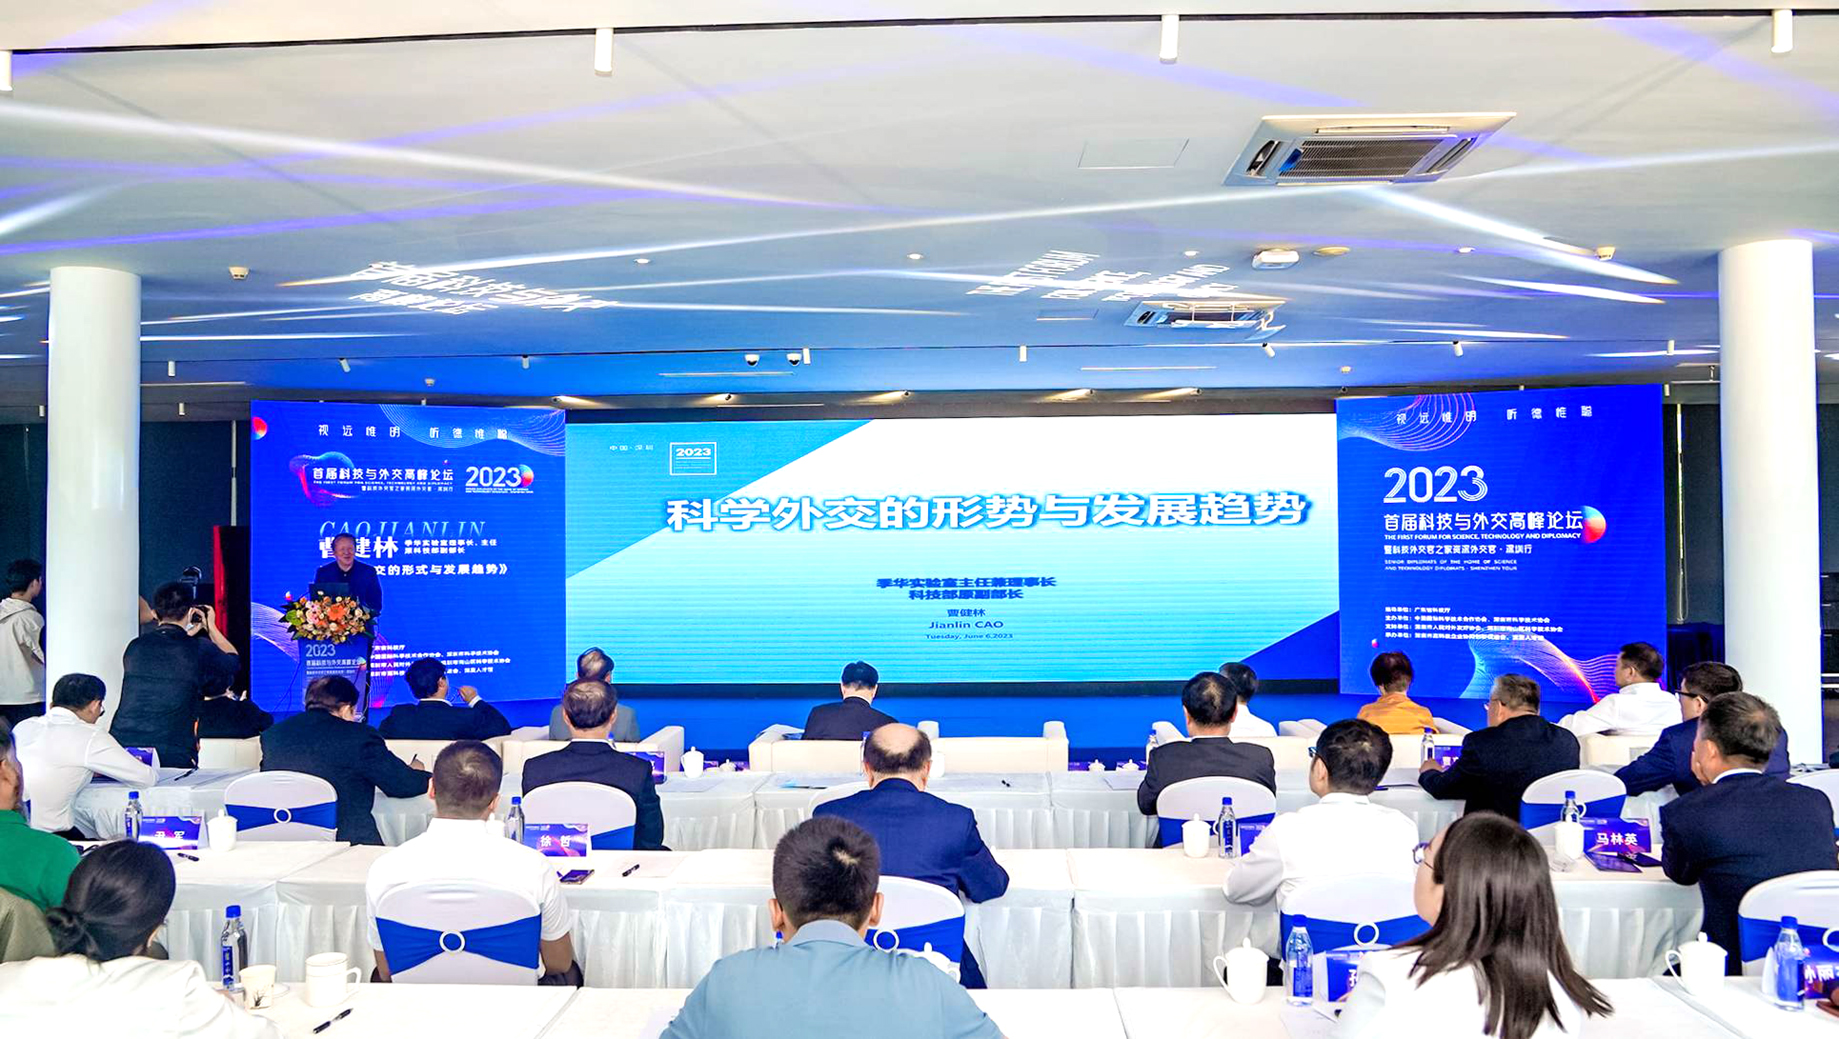 2023首届科技与外交高峰论坛在深圳人才公园举行 南山区海外招才引智活动同期启动